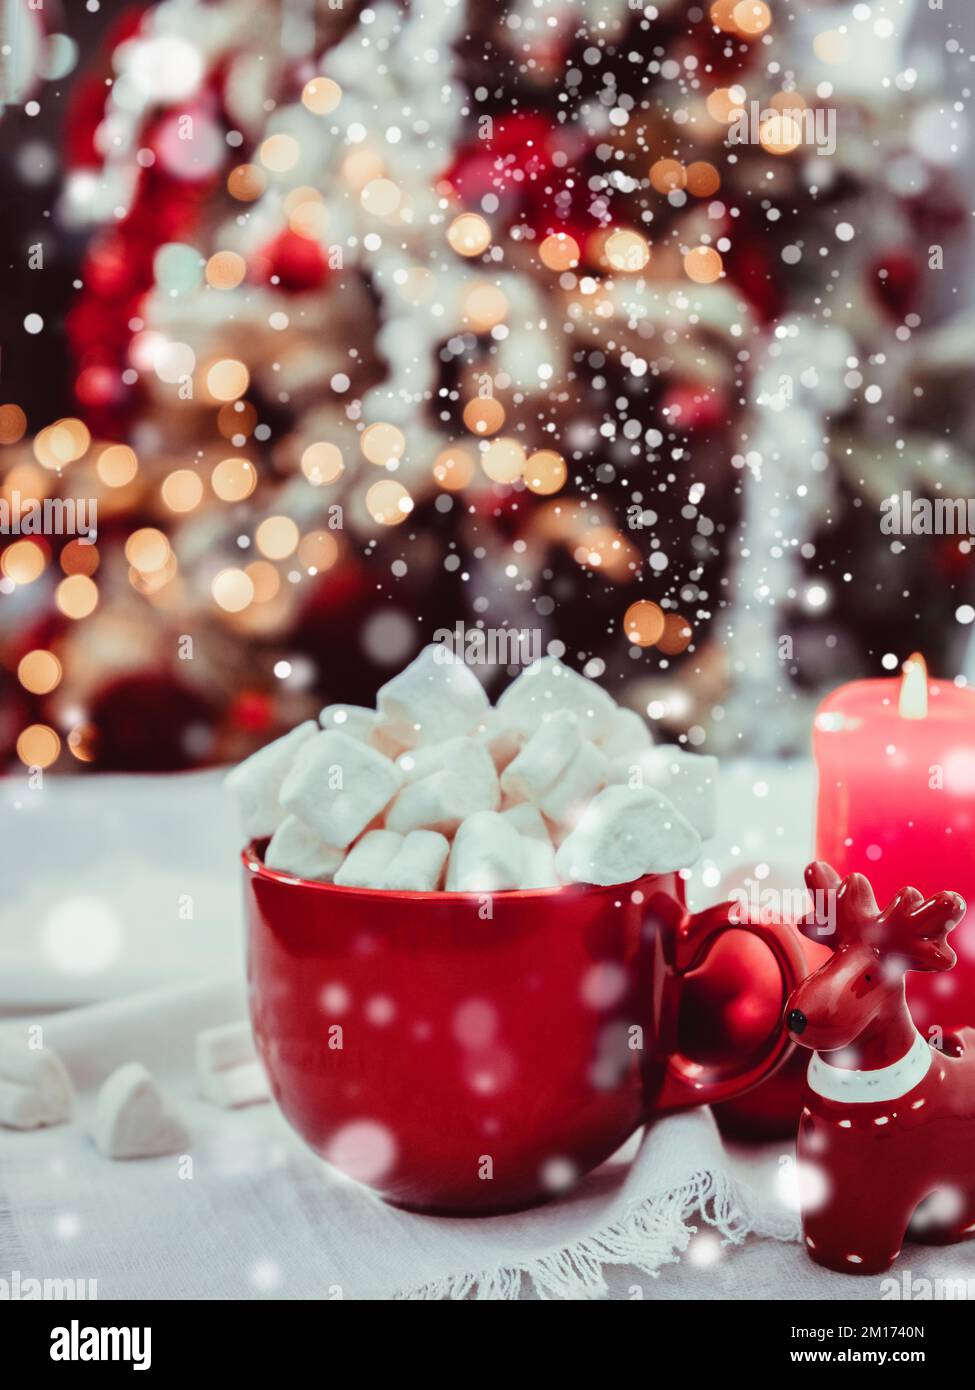 Tarjeta de felicitación navideña con taza roja con malvaviscos Foto de stock